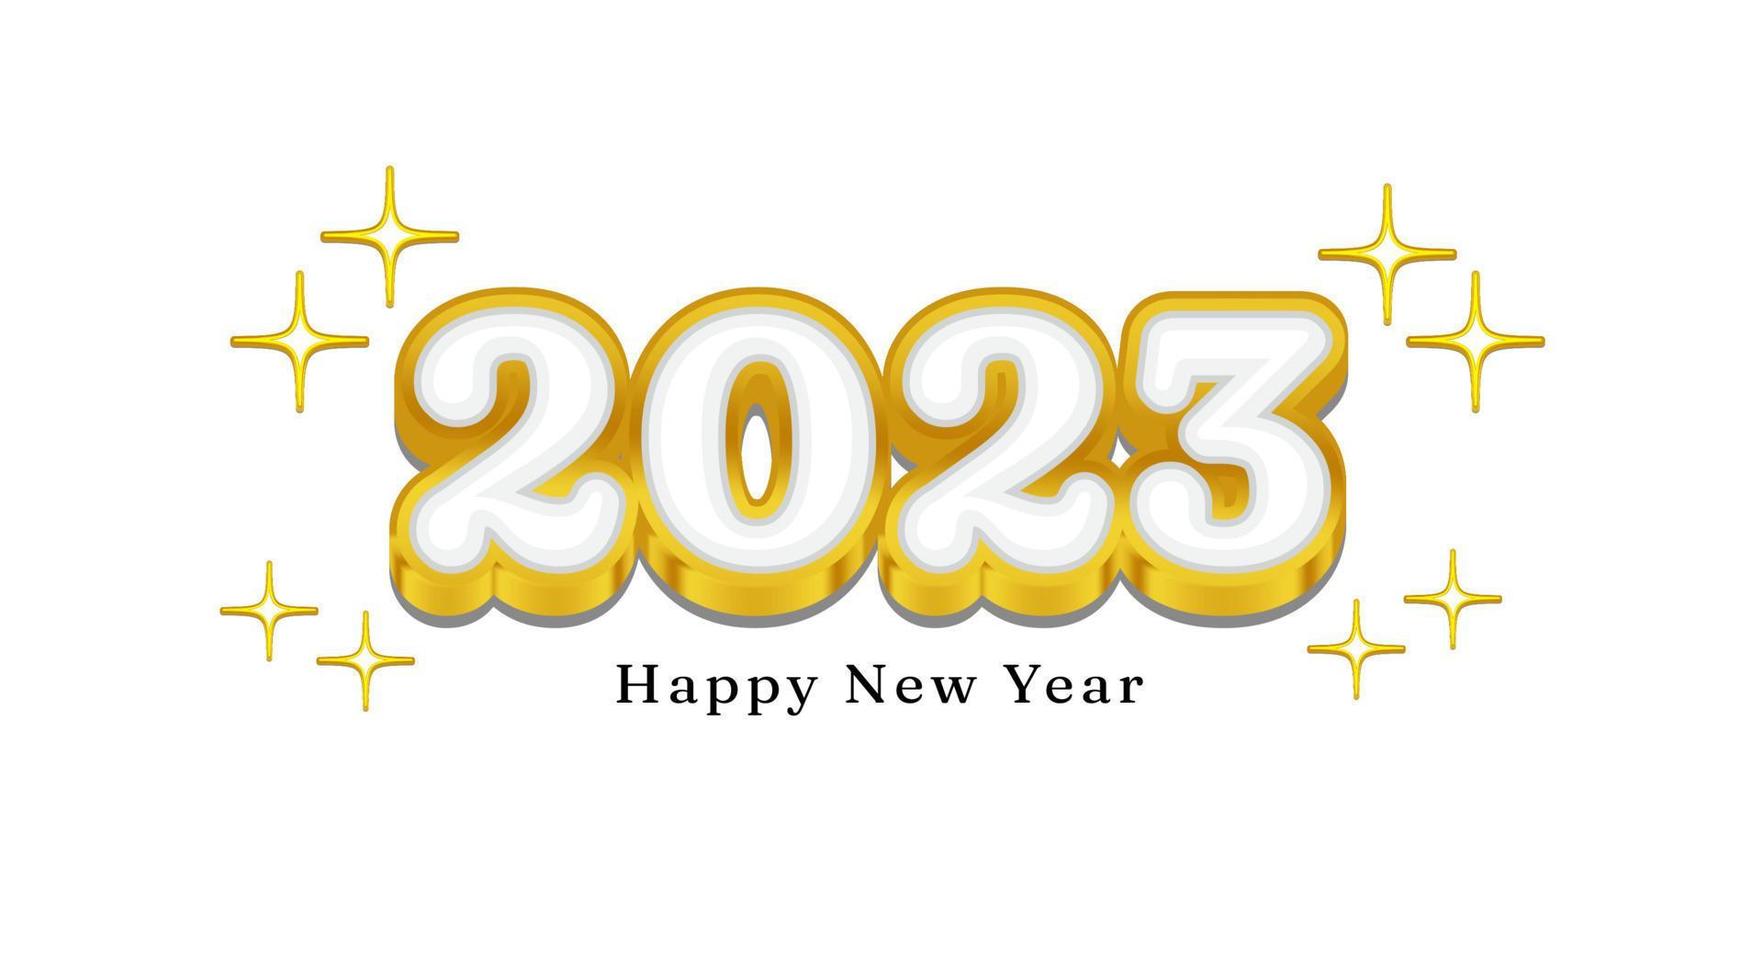 typografie met 2023 gelukkig nieuw jaar slogan. goud kleur 3d effect. vector